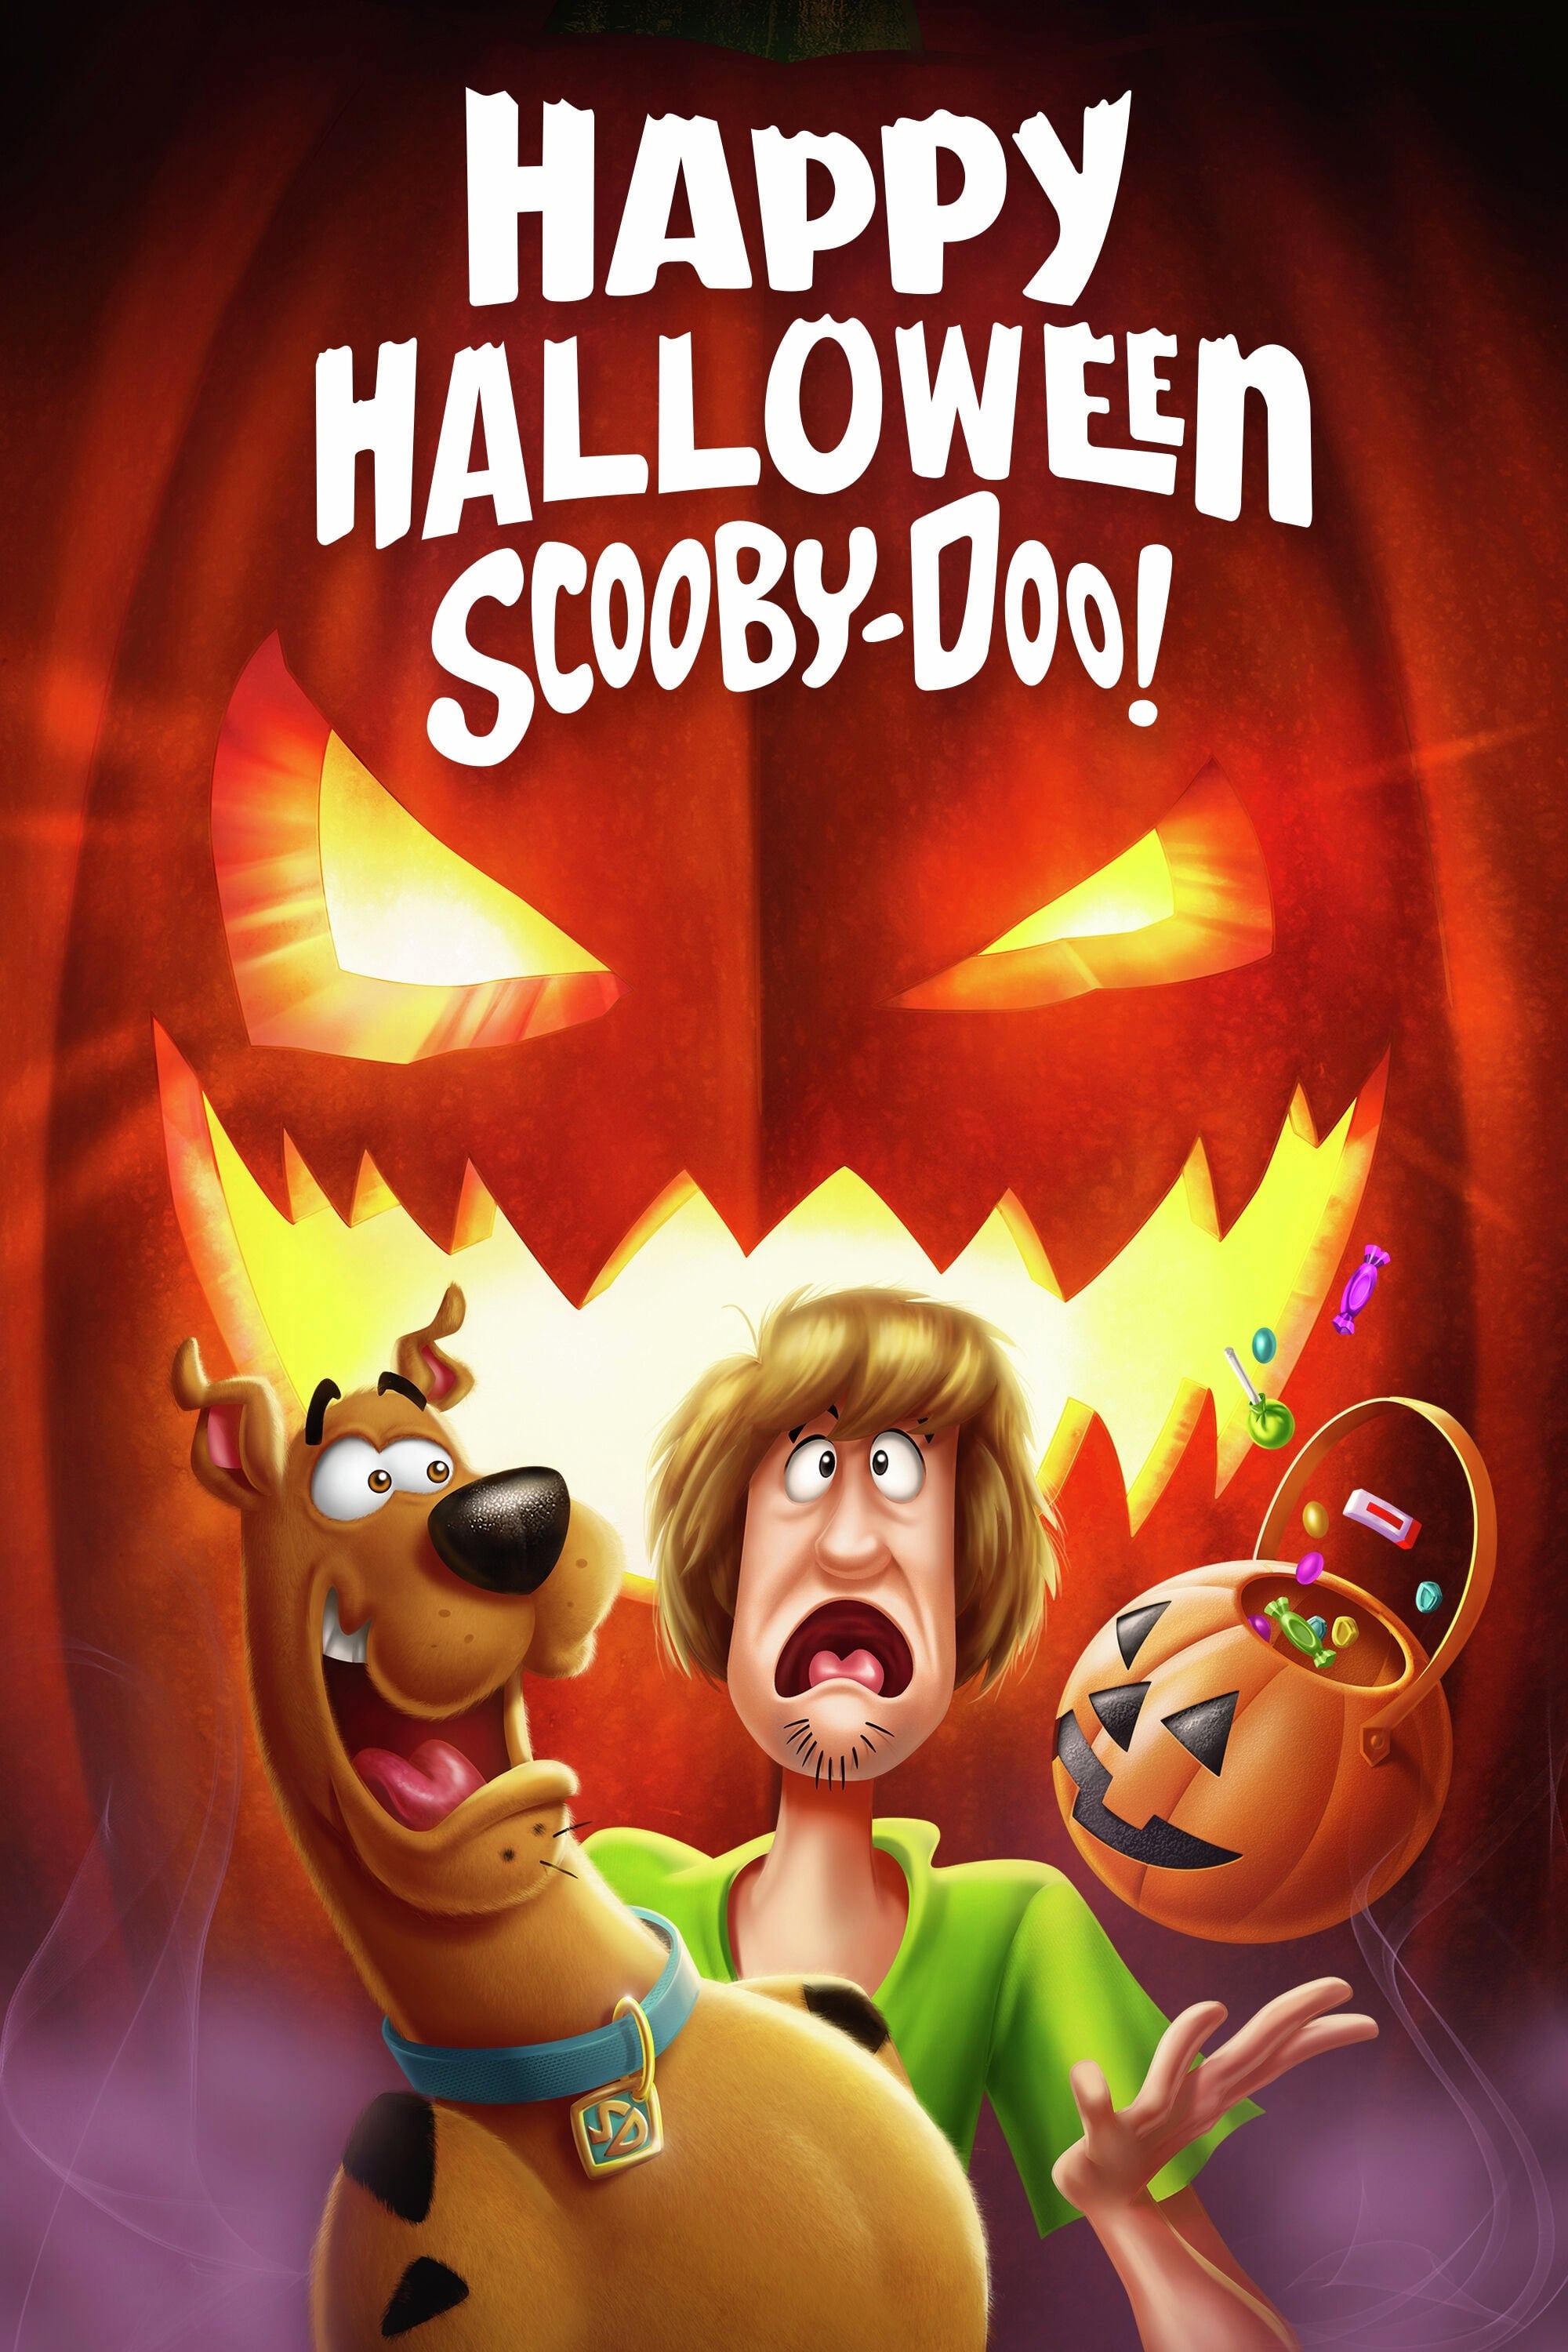 Scooby-Doo! Halloween